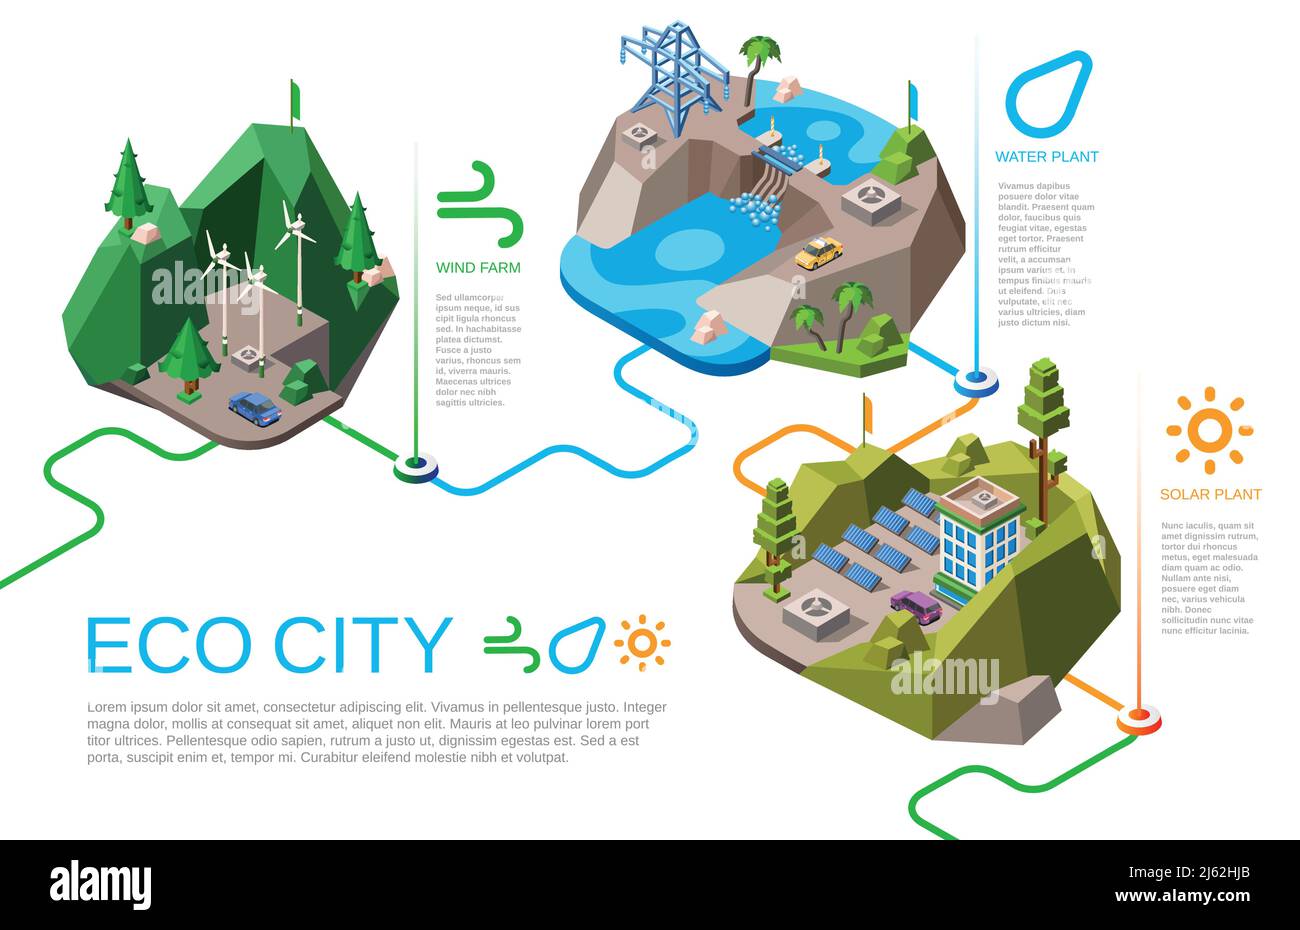 Eco City Vektor Illustration isometrische natürliche Energiequellen für das städtische Leben. Cartoon Stadtlandschaft mit erneuerbarer Energieversorgung aus der Natur, Solar b Stock Vektor